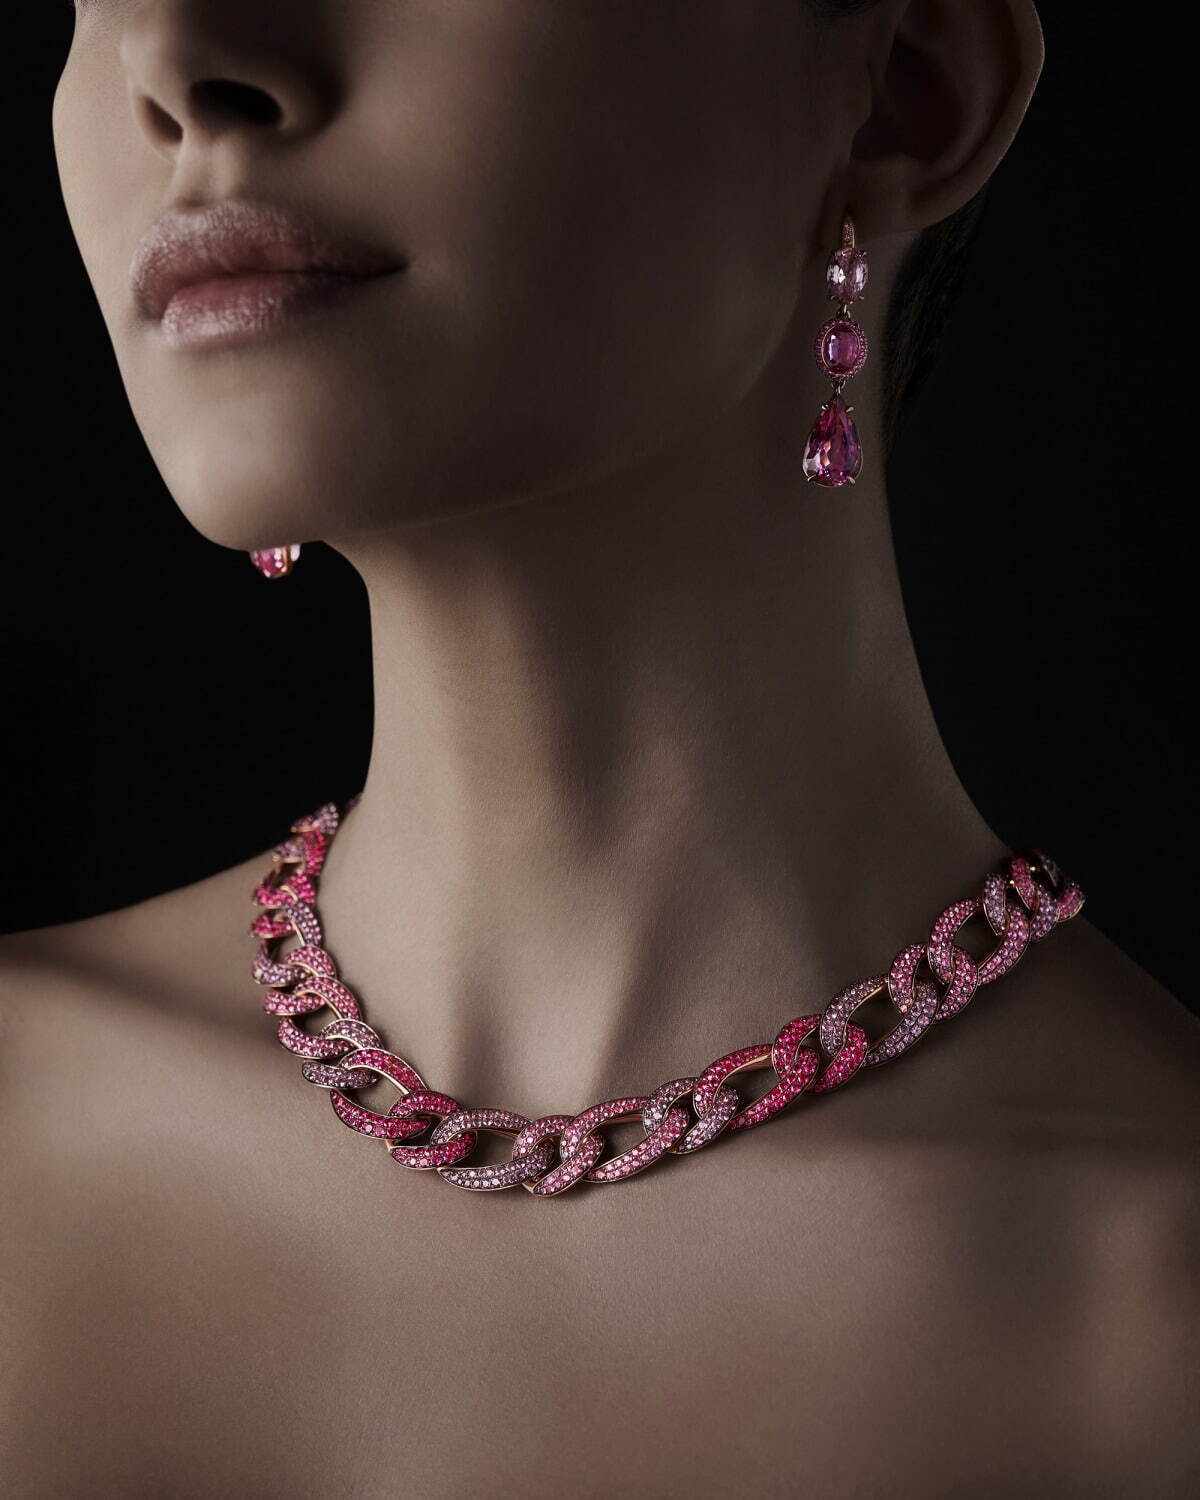 ＜展示イメージ＞
ダイヤモンドとピンク・パープル・レッド・ラベンダースピネルを散りばめた、ローズゴールドのピンクグルメネックレス。